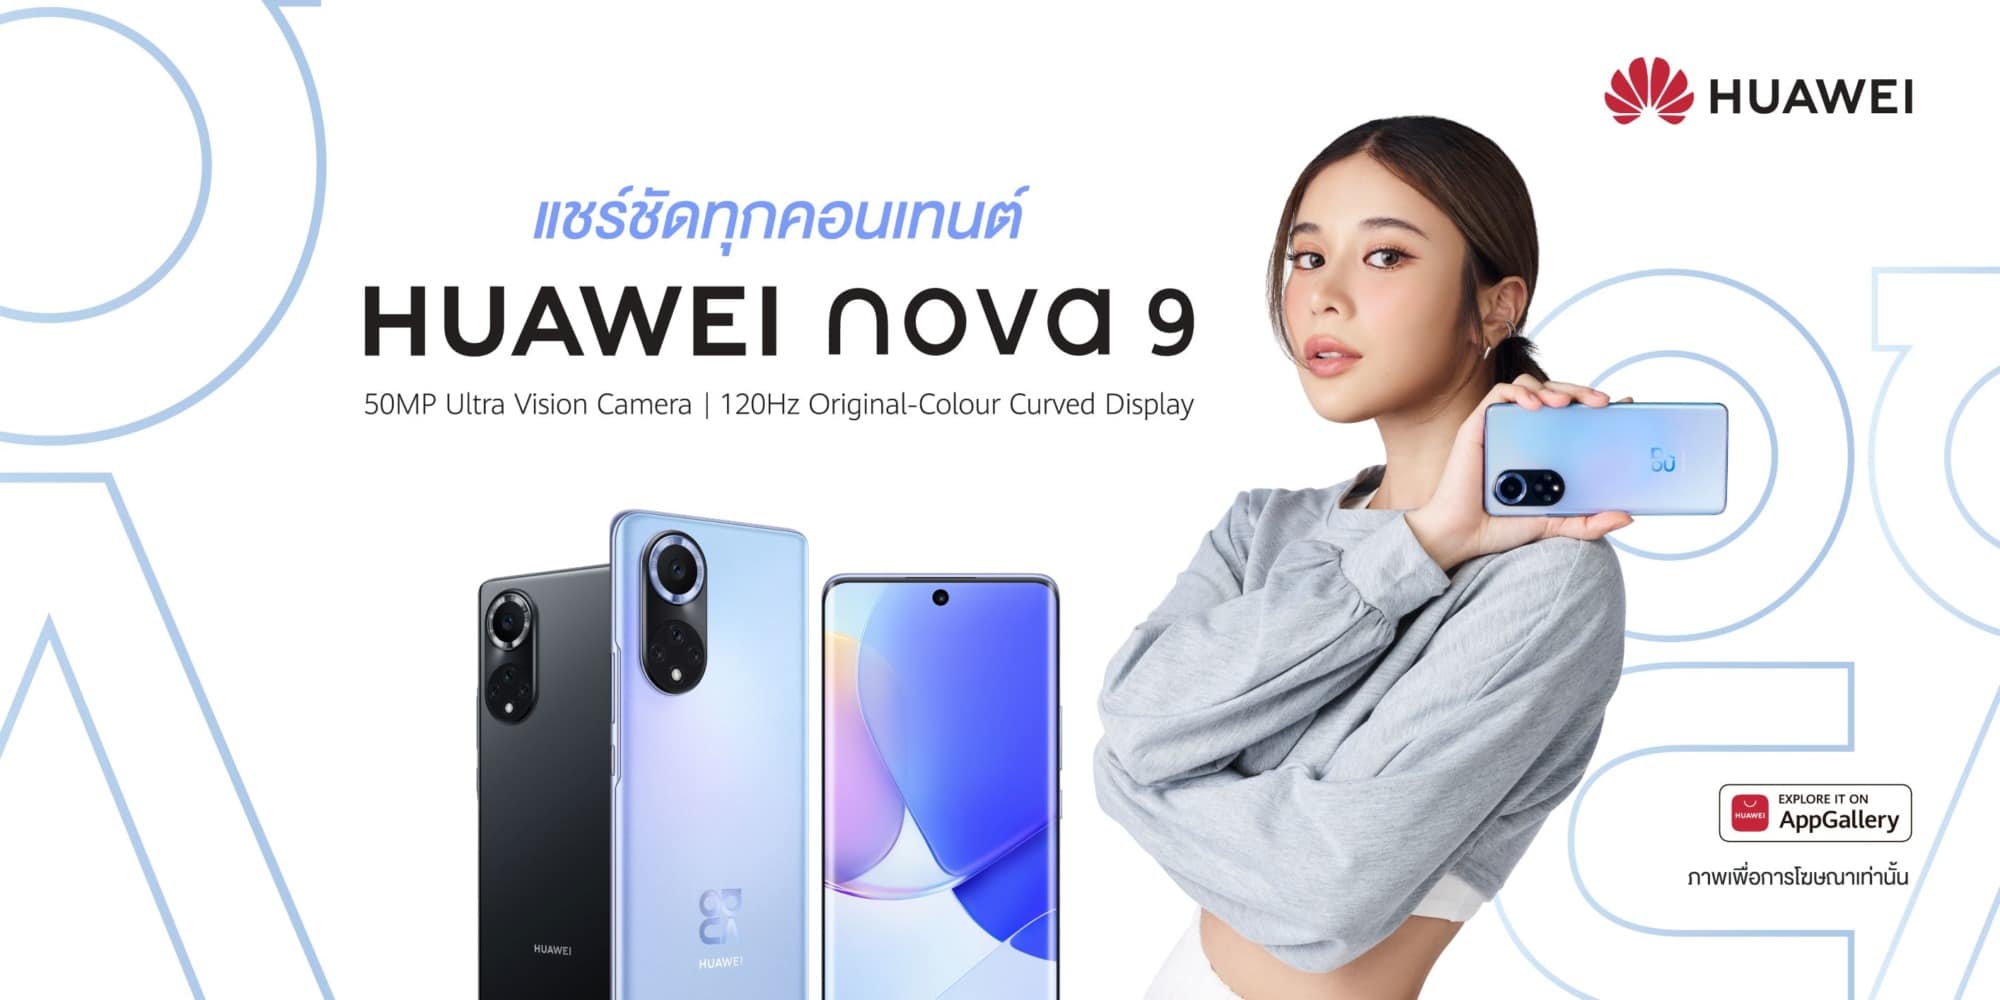 หัวเว่ยกลับมารุกตลาดสมาร์ทโฟน เปิดตัว HUAWEI nova 9 พร้อมกล้องทรงพลัง 1